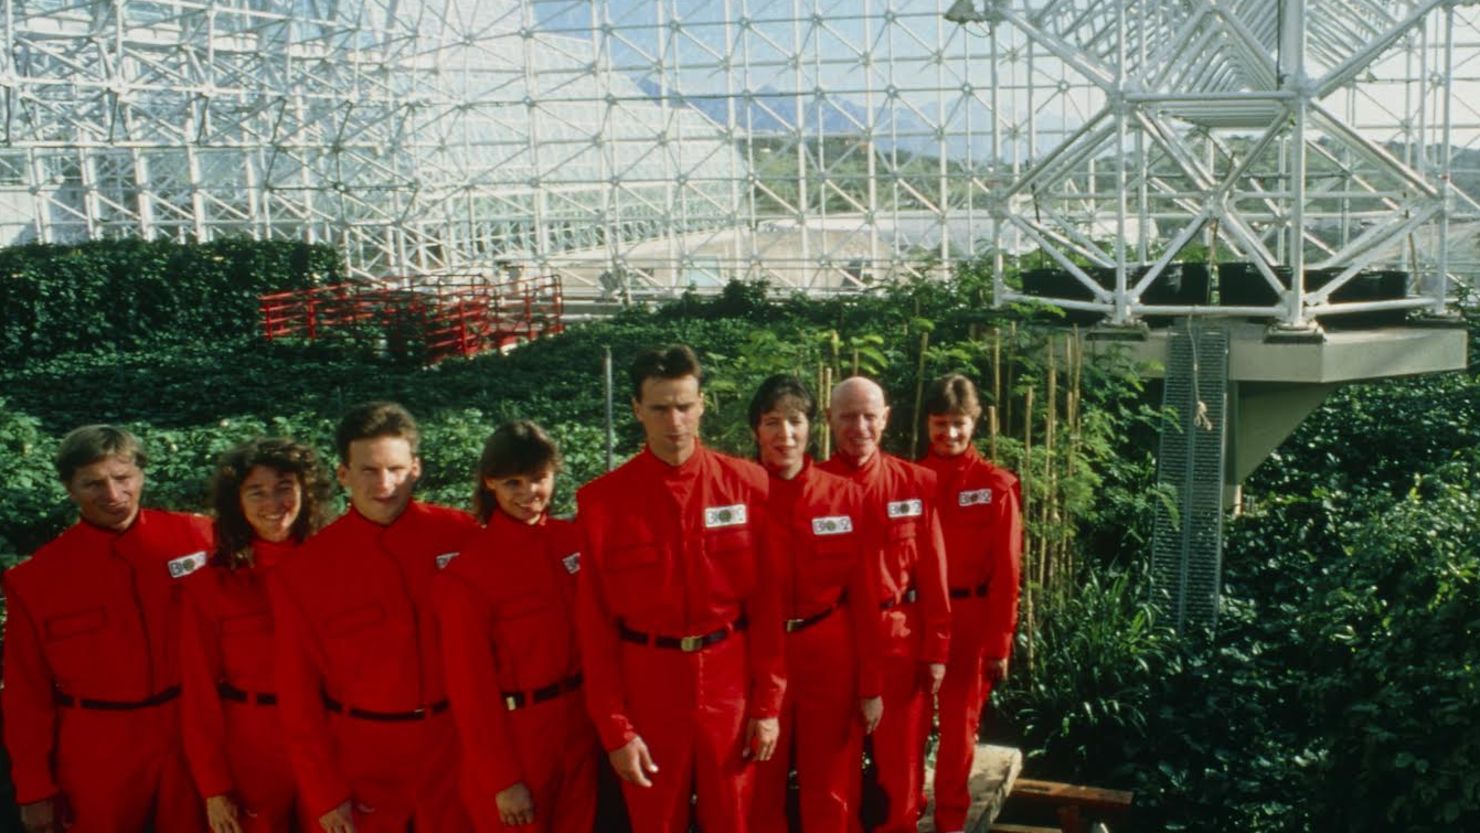 Inside Biosphere 2 in 'Spaceship Earth.'